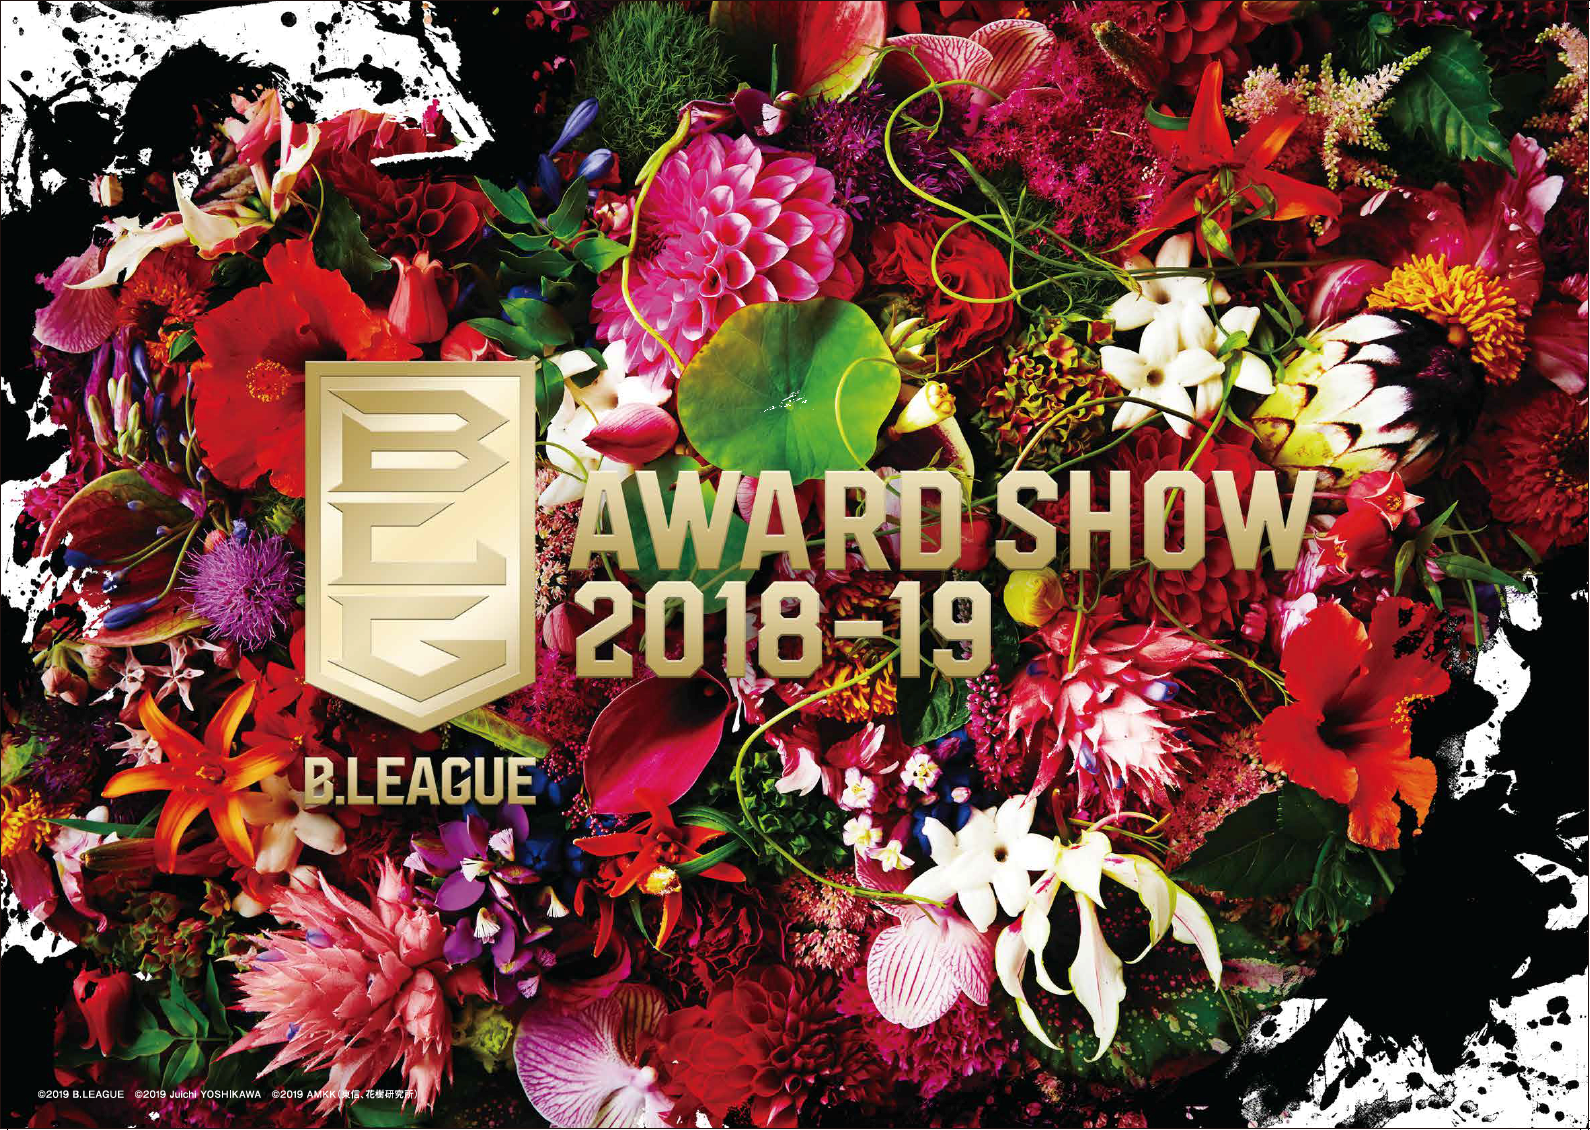 ｢B.LEAGUE AWARD SHOW 2018-19｣　開催のお知らせ 希望とともに花を咲かせる「令和」最初の年間表彰式